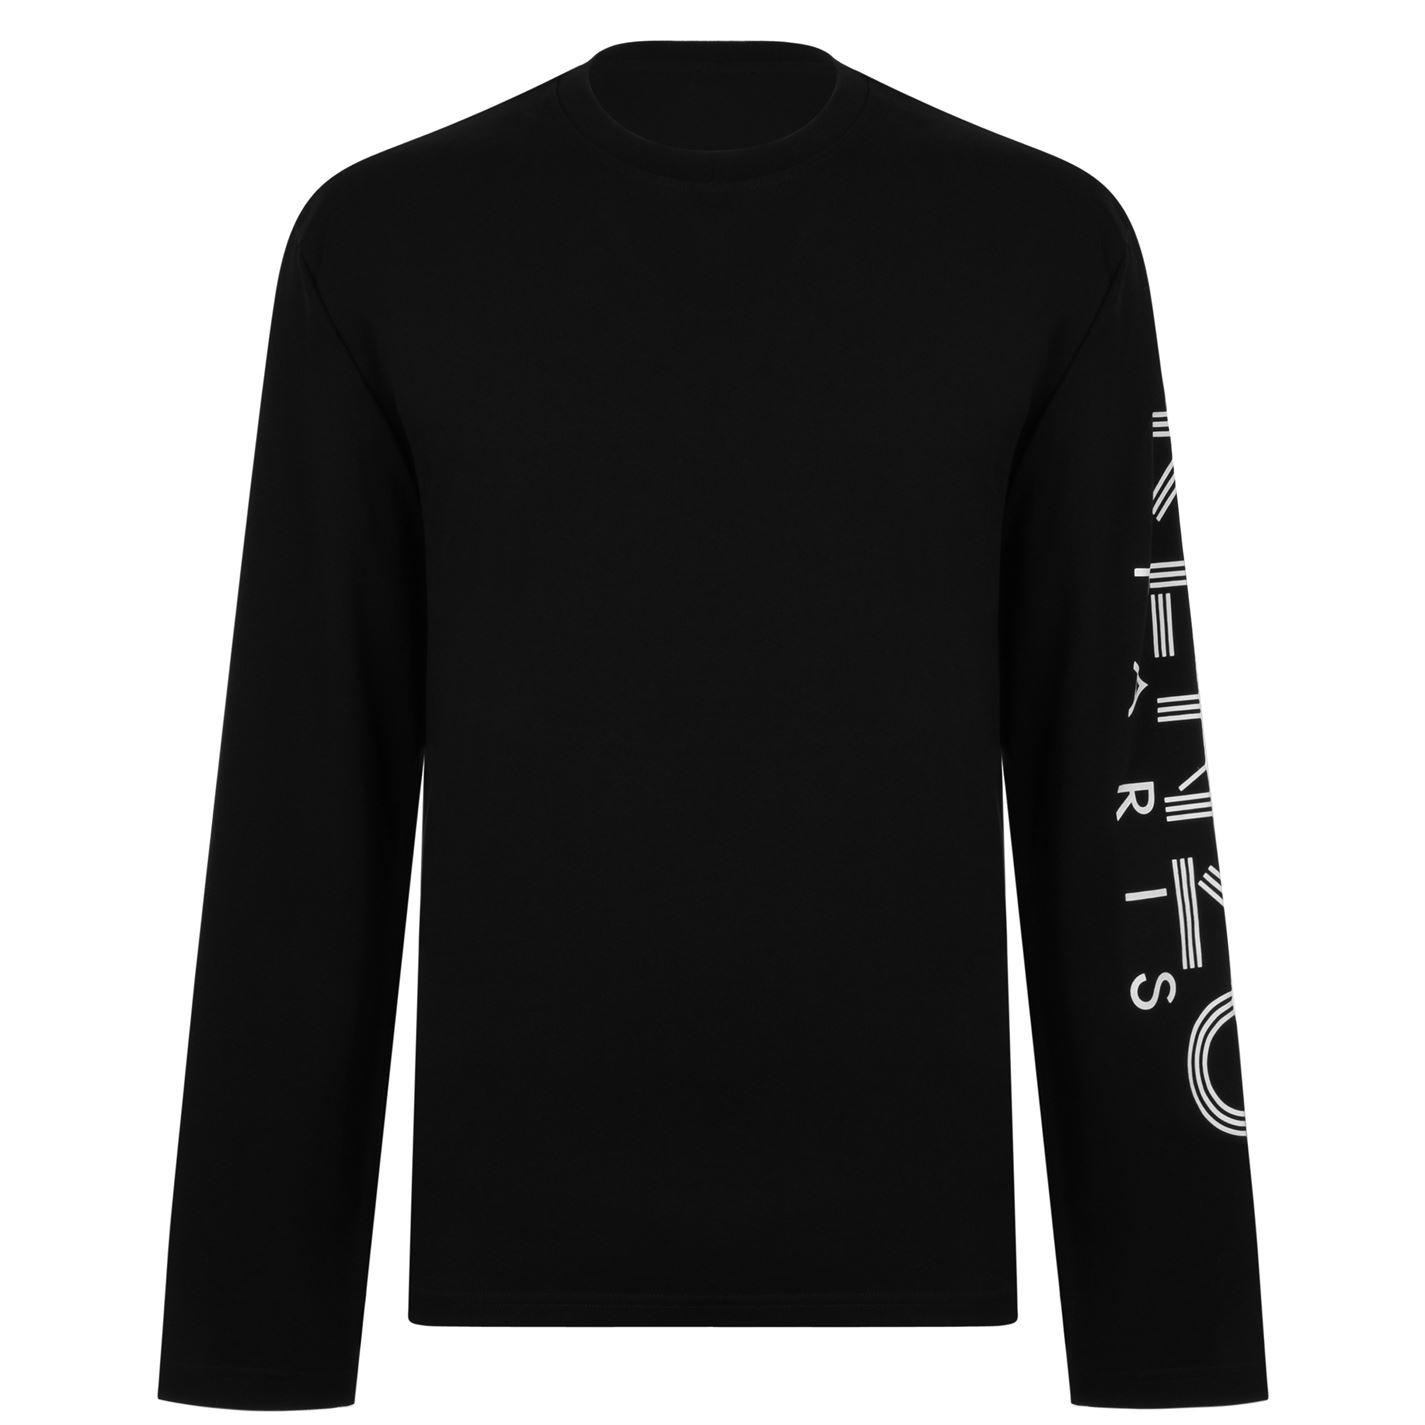 KENZO Long Sleeve Logo T Shirt in Black for Men - Lyst